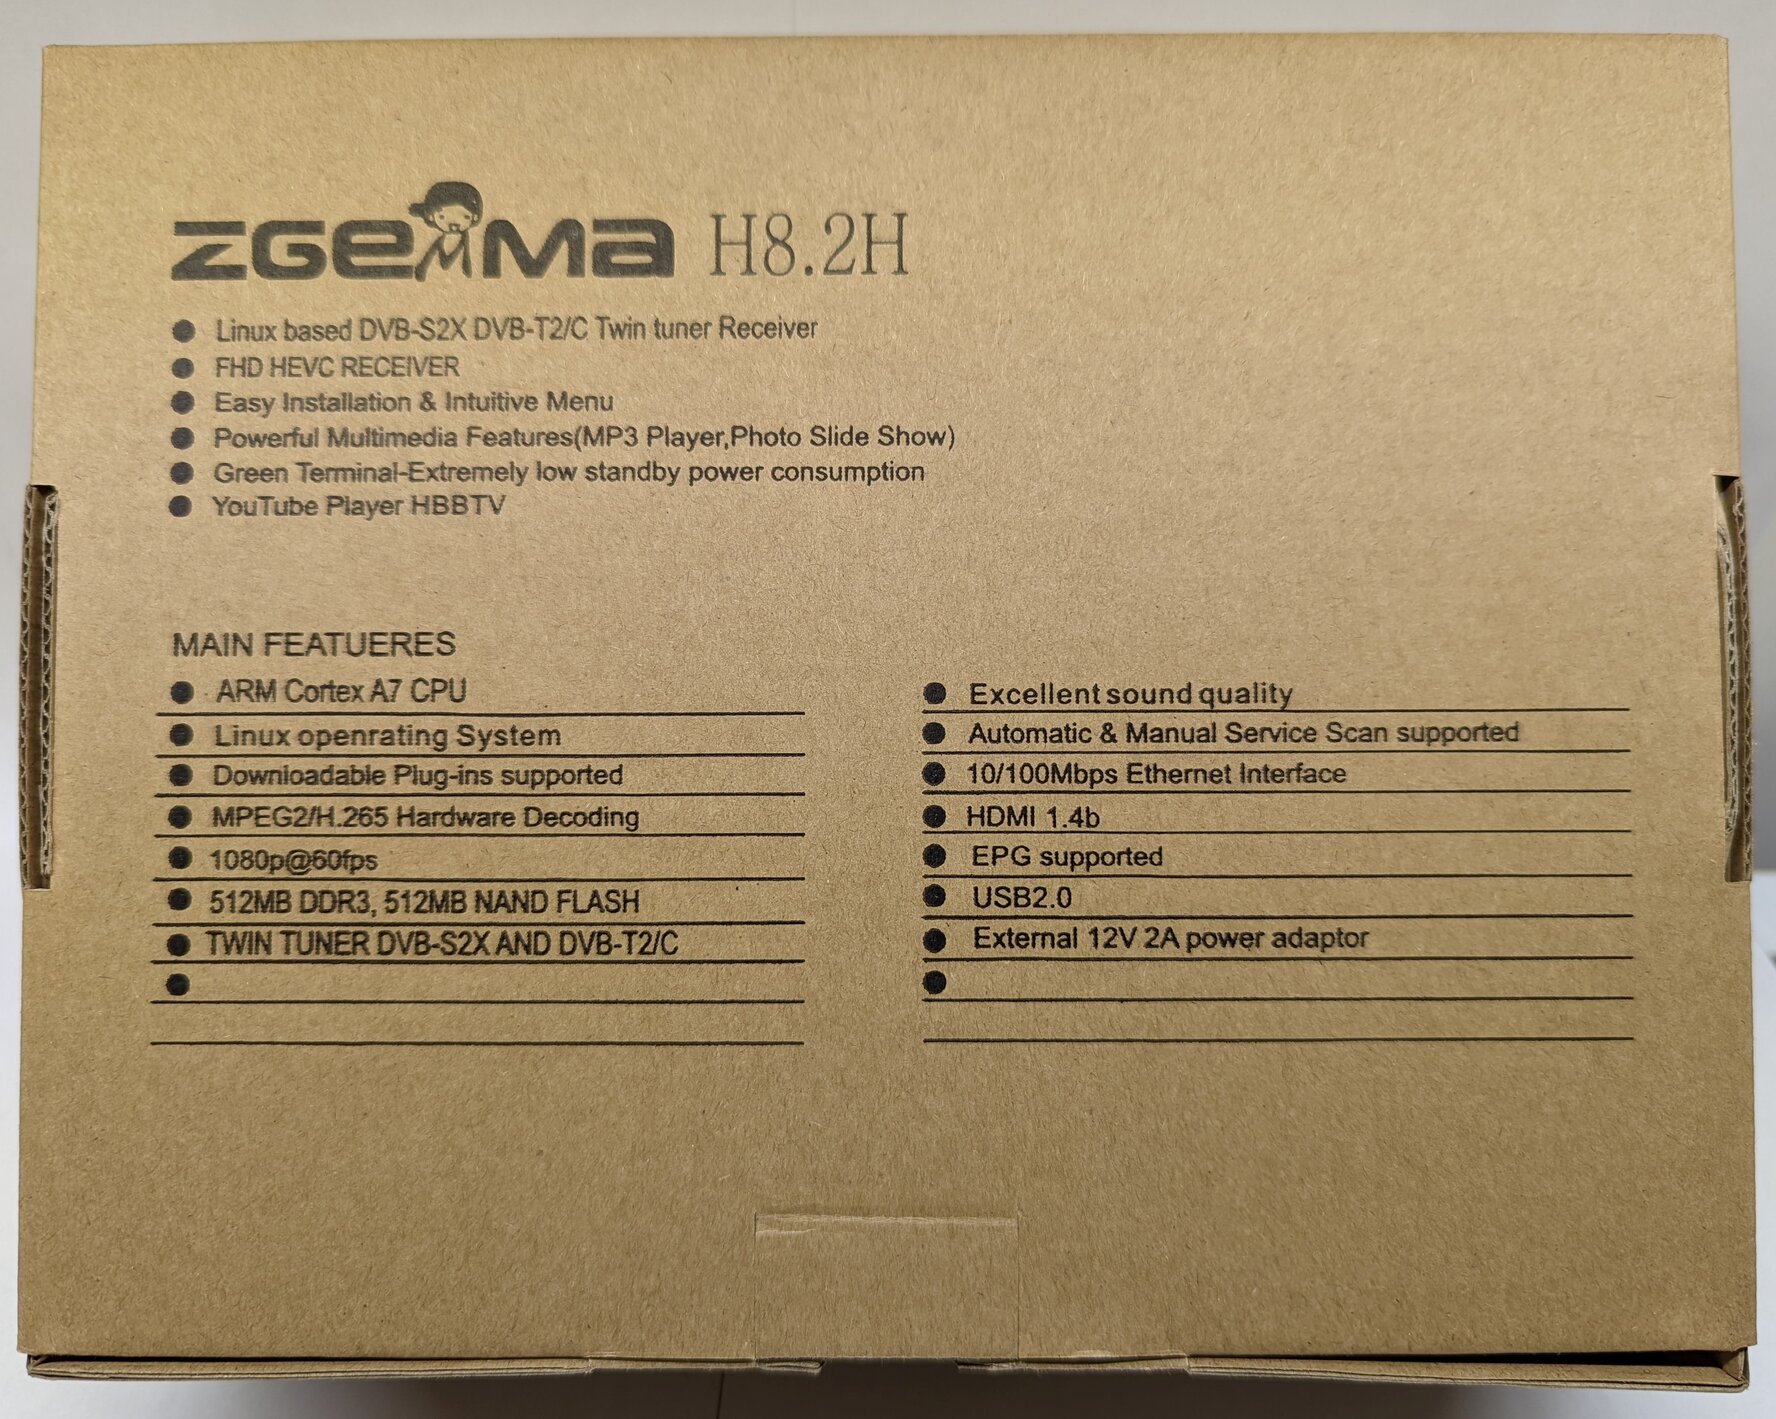 Zgemma H8.2h: Full HD 1080P Satellite Receiver with DVB-S2X + DVB